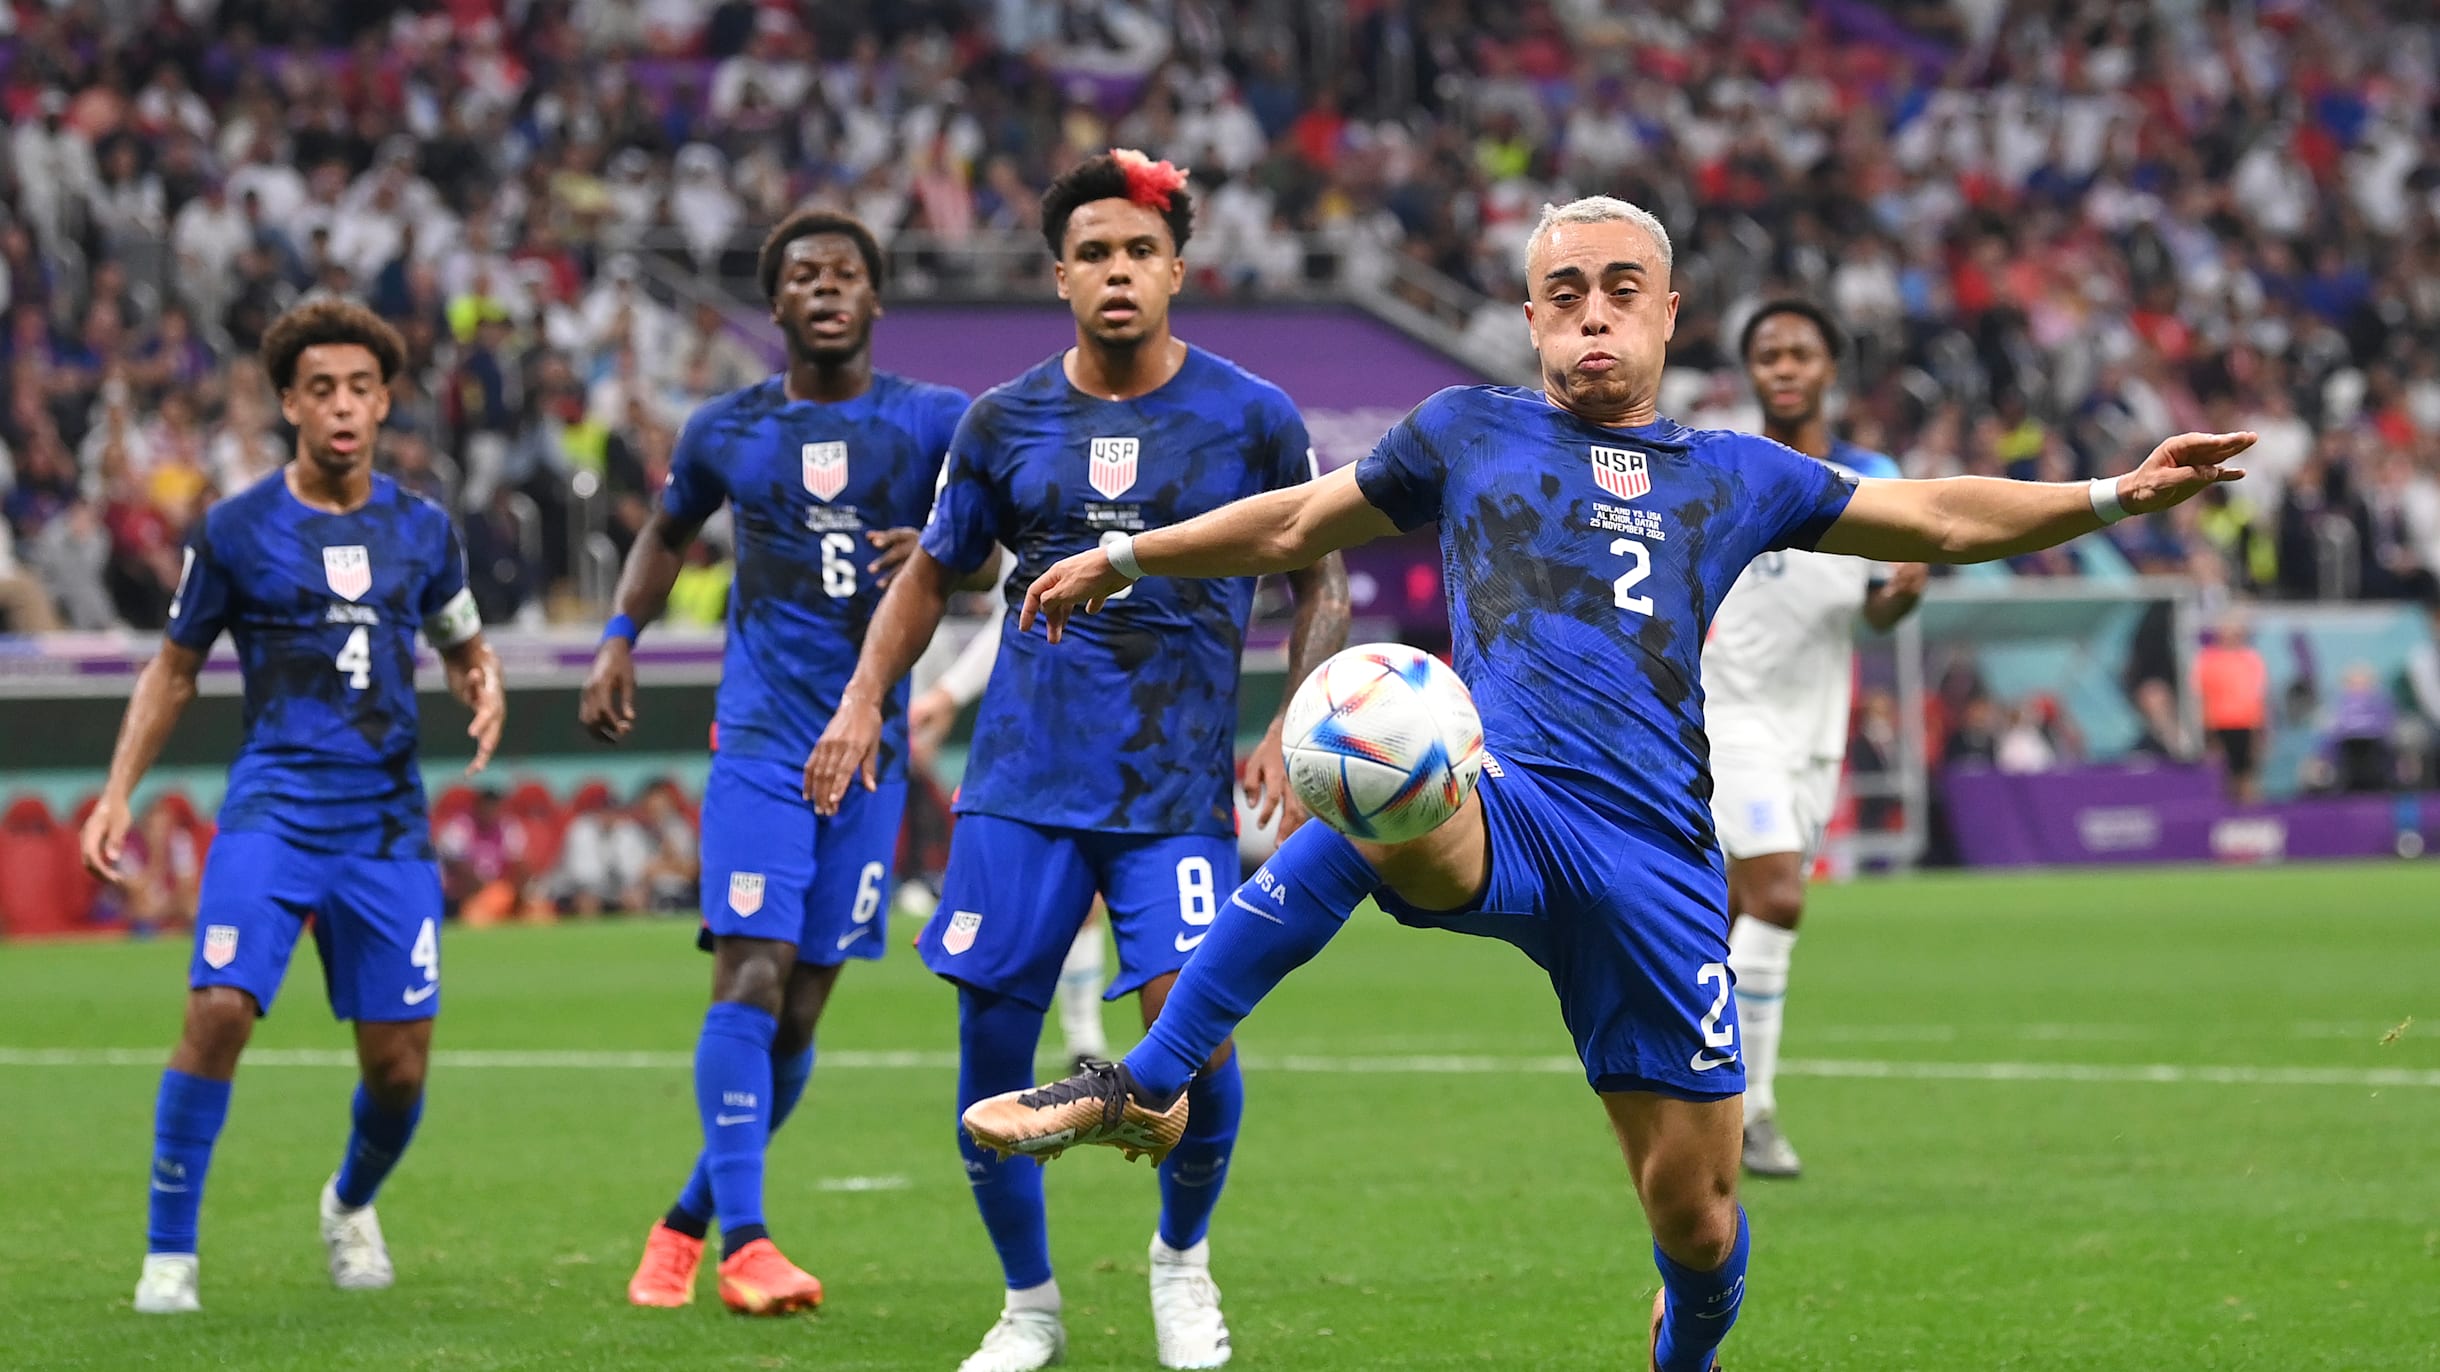 United States qualify for Qatar 2022 World Cup, CRC 2, USA 0